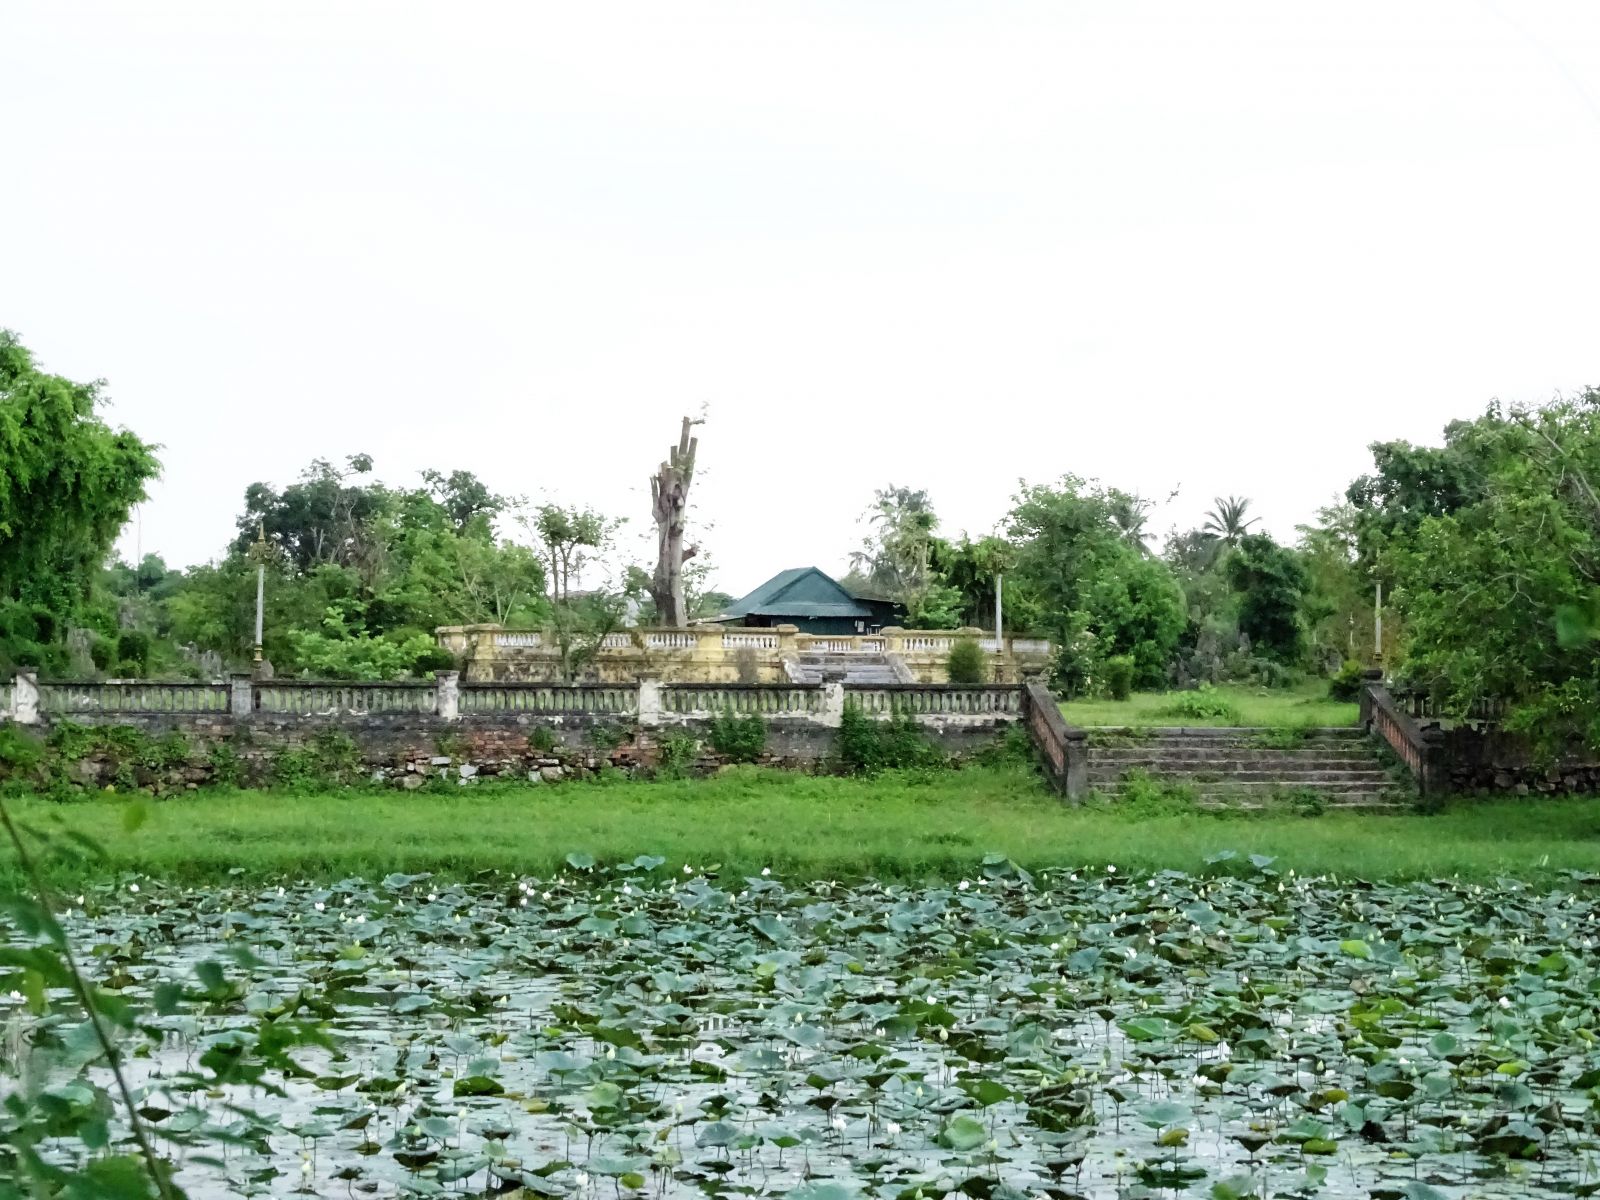 Khu vực Hồ Tịnh Tâm, một trong những di tích, thắng cảnh nổi tiếng cố đô Huế sẽ được bảo tồn, tôn tạo trong giai đoạn của dự án